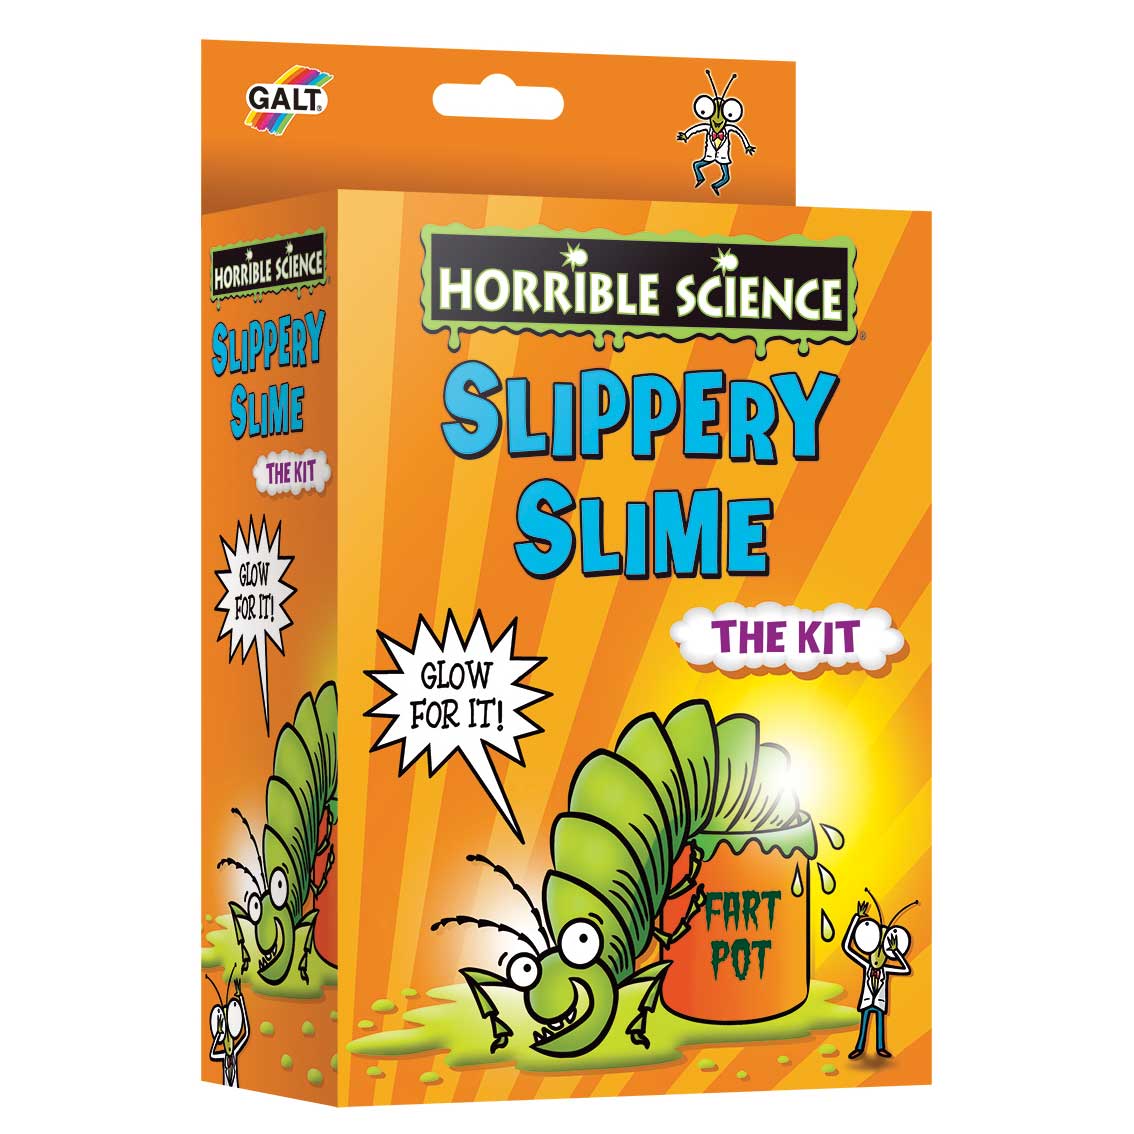 Horrible Science - Slippery Slime (4M-LL5278)